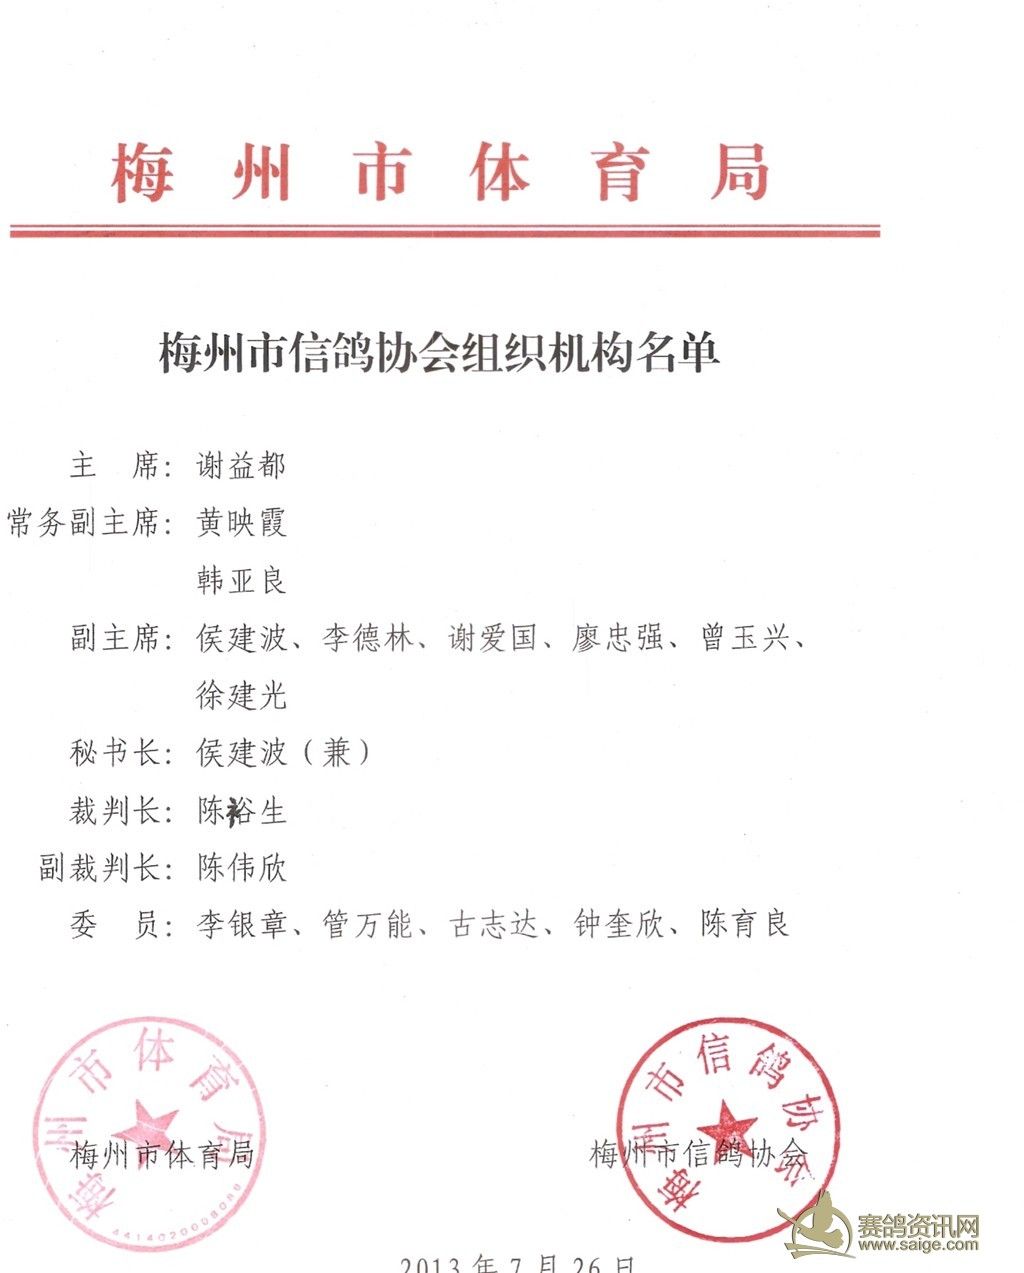 梅州市信鸽协会组织机构名单_协会动态_梅州